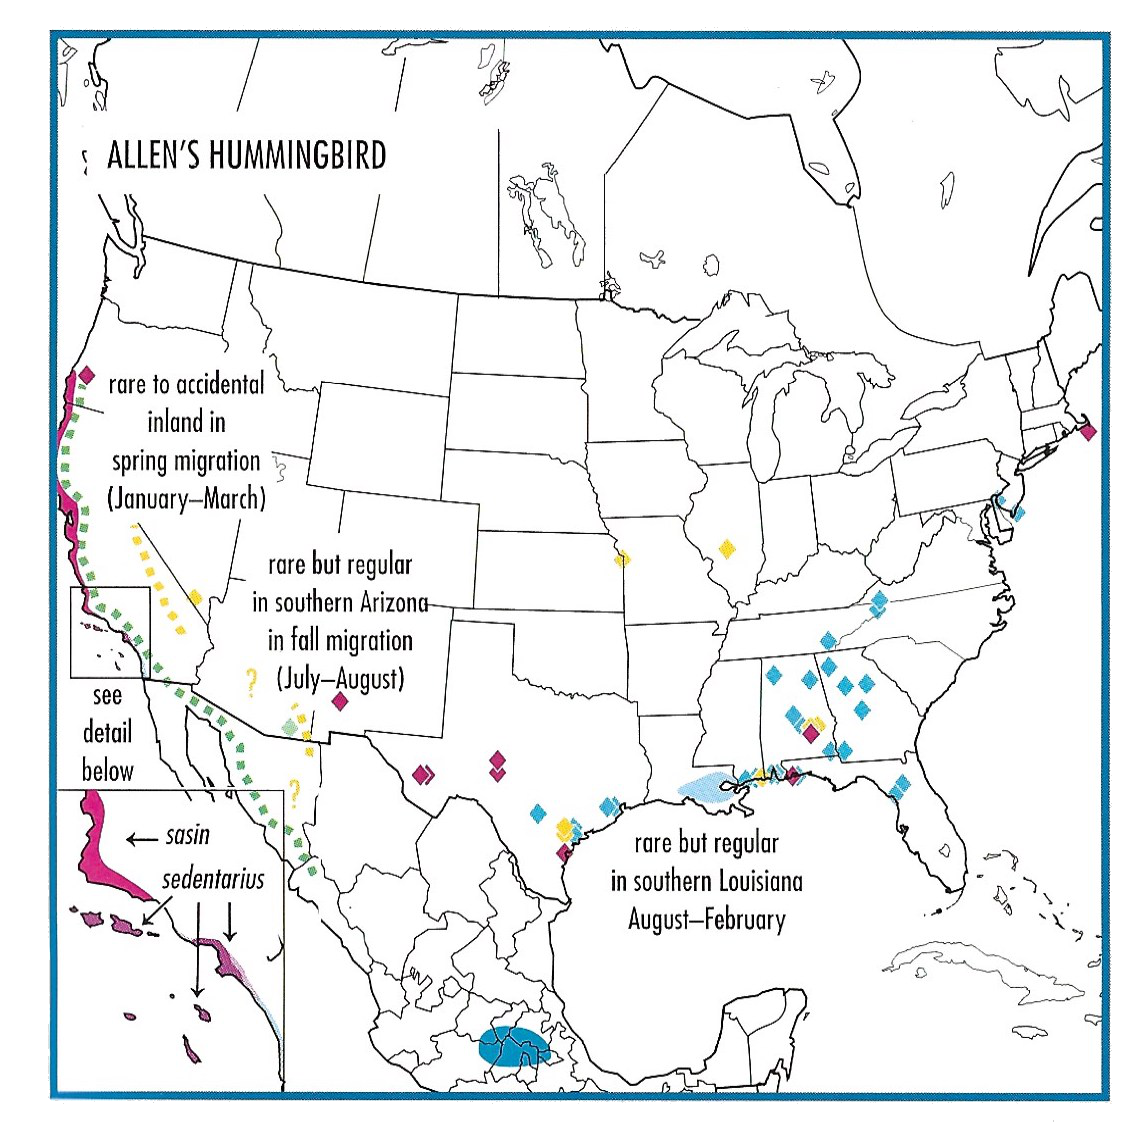 allen's hummingbird migration and range map